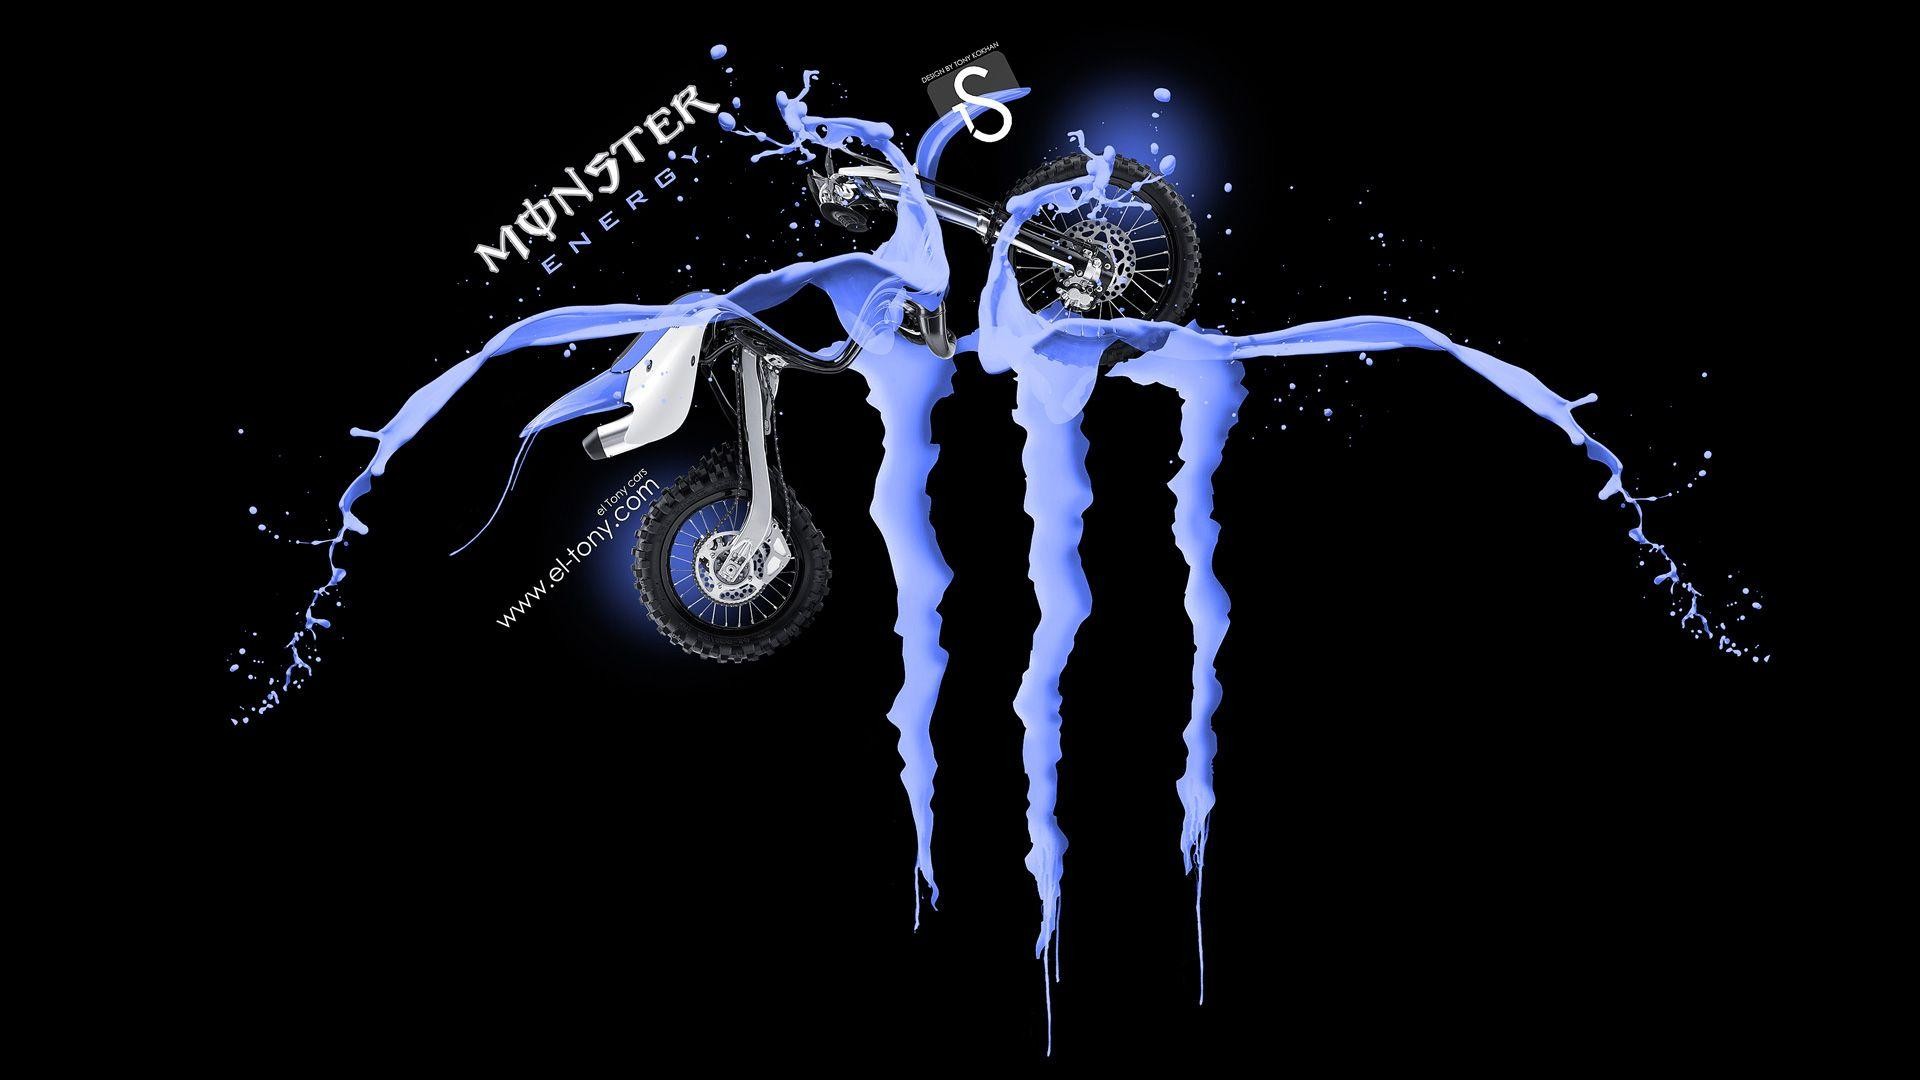 Blue Monster Energy Logo Wallpaper Image